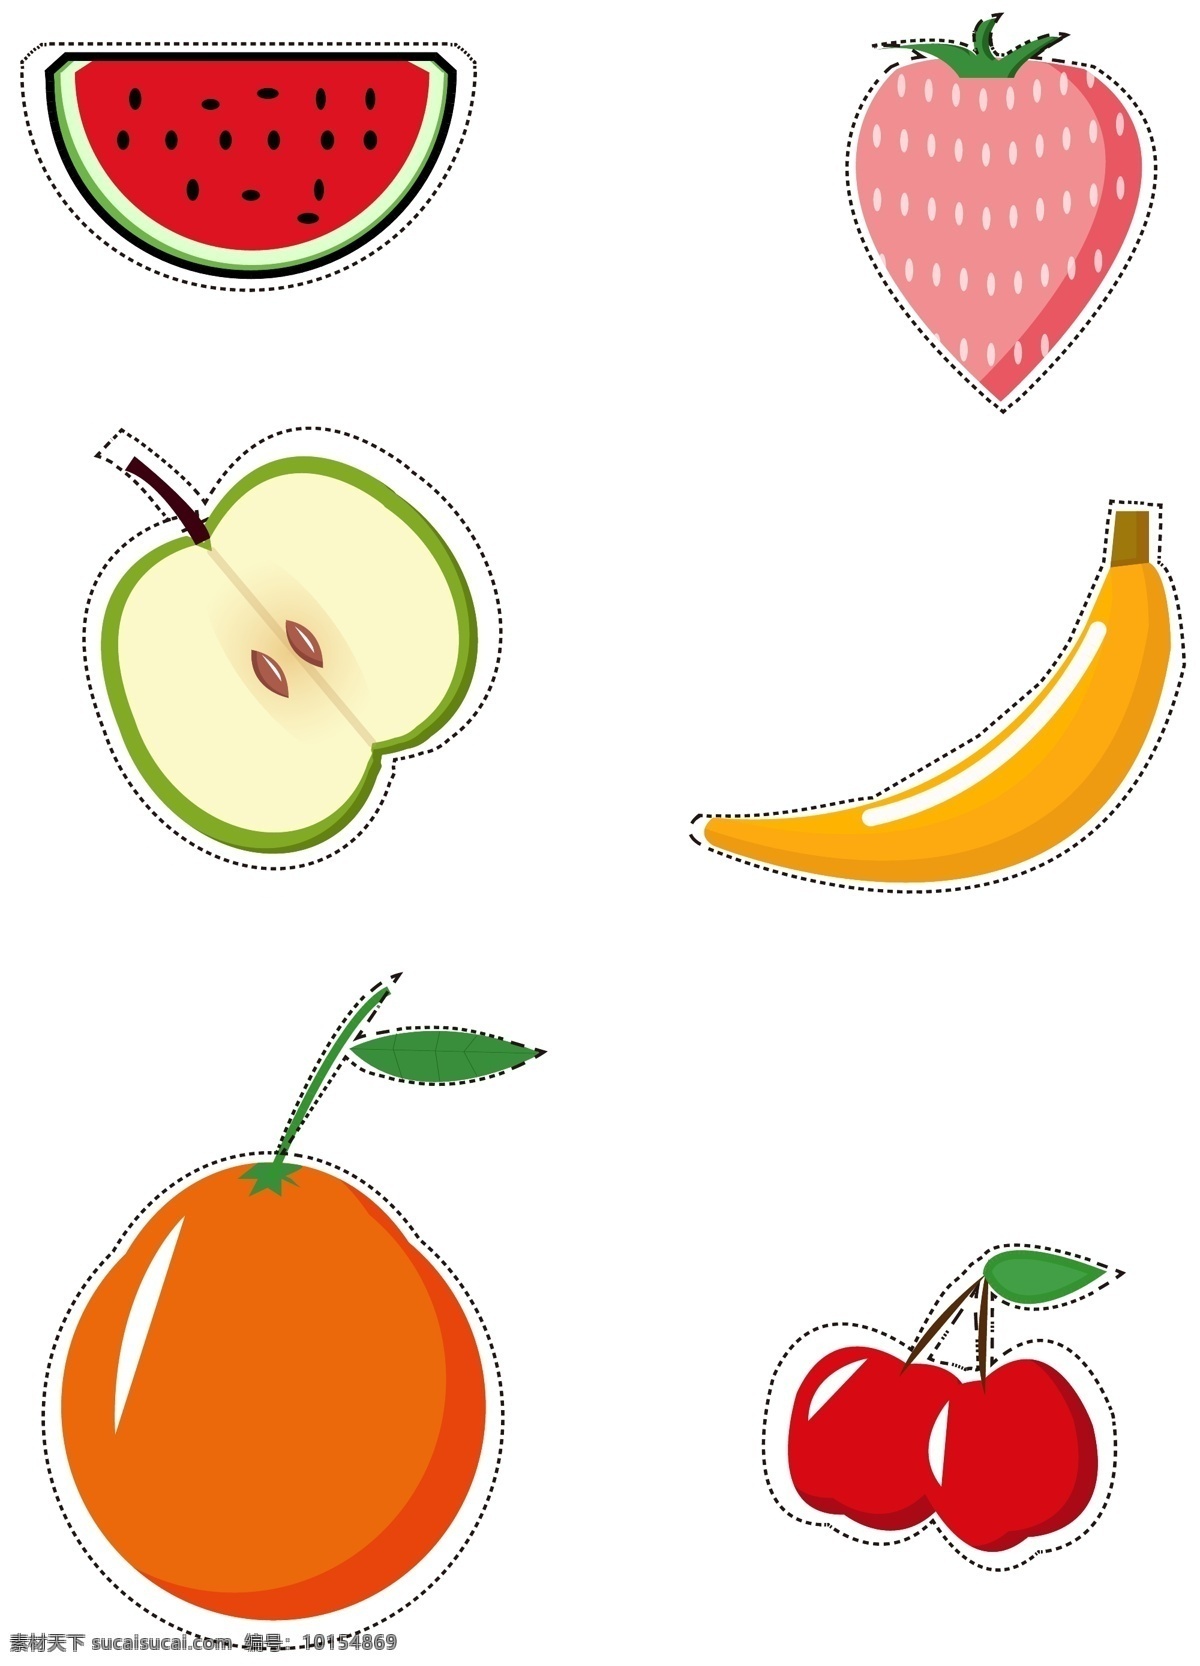 矢量 简约 可爱 水果 小 贴纸 手 账 元素 西瓜 草莓 苹果 香蕉 樱桃 可爱水果 橘子